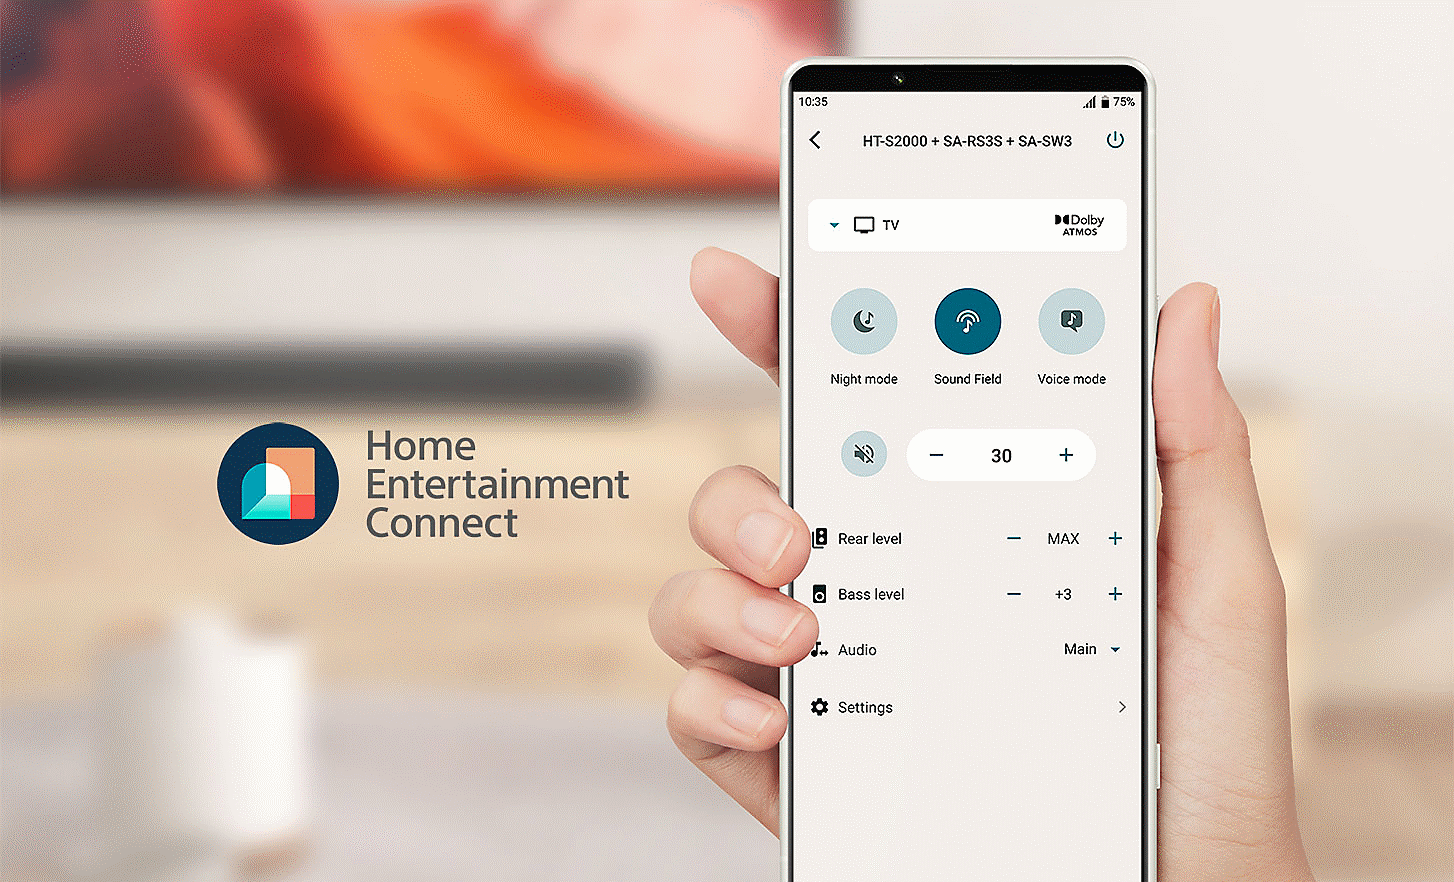 Obrázok ruky držiacej mobilný telefón, zobrazuje sa ponuka nastavení, logo Home Entertainment Connect sa nachádza vľavo